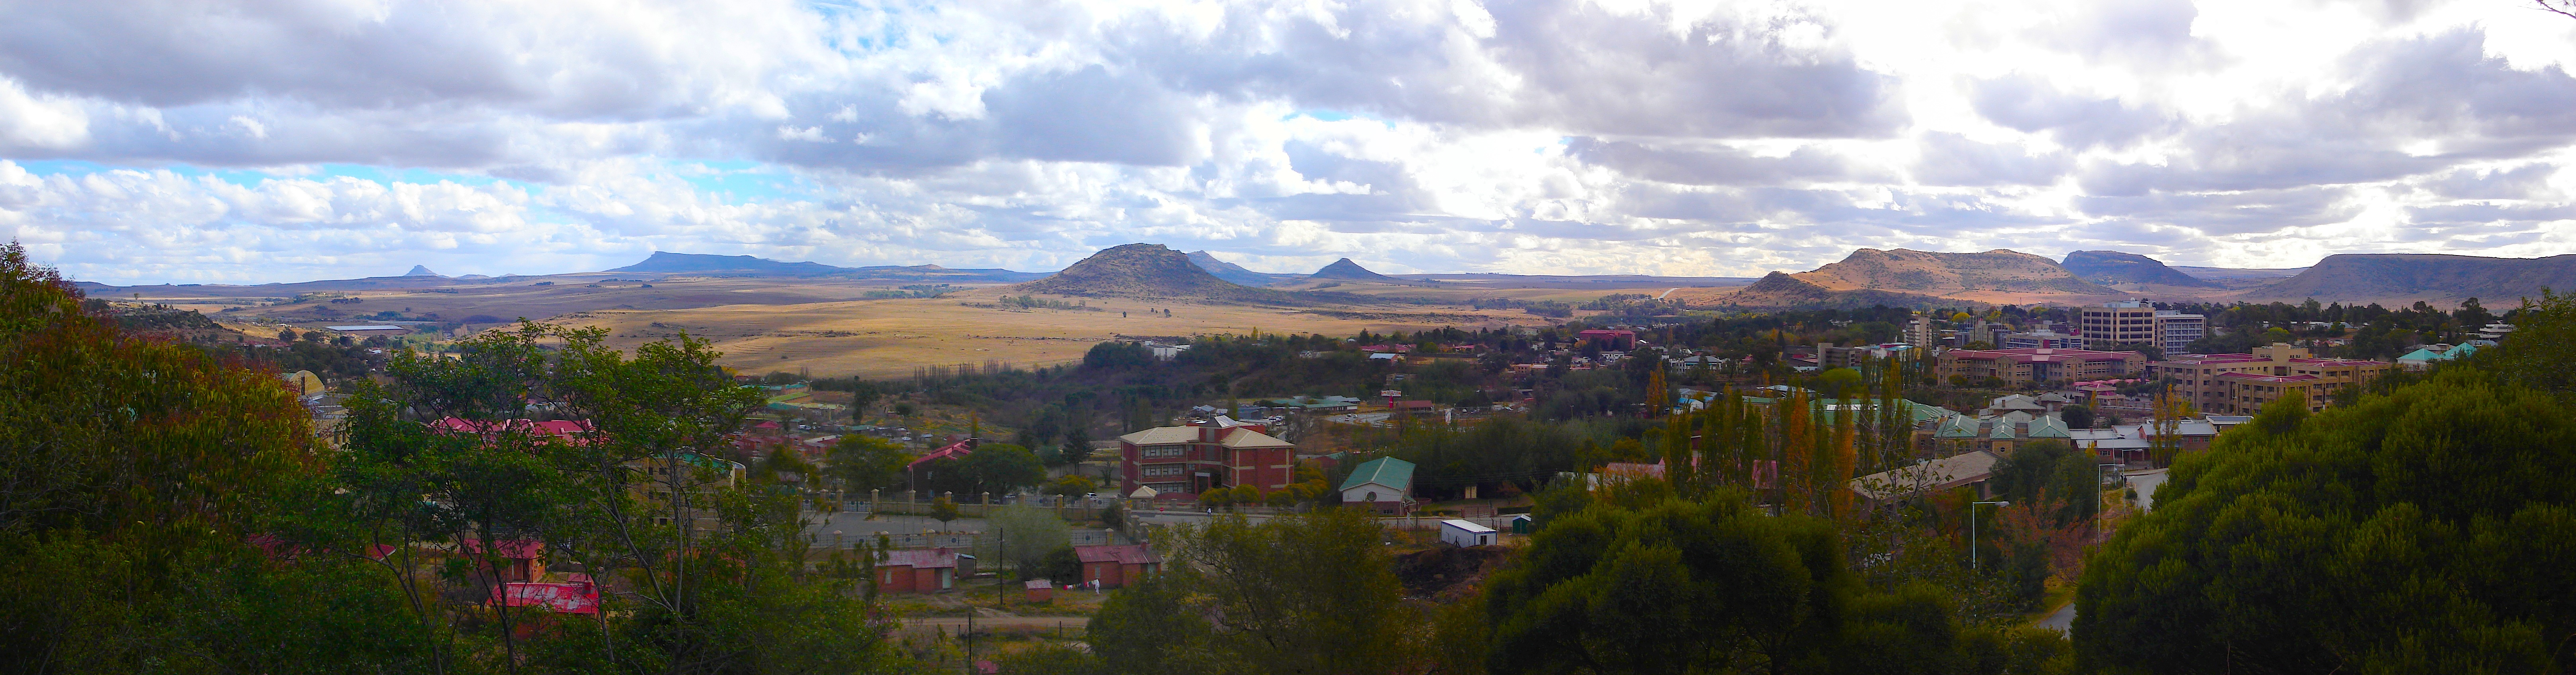 Maseru 2007. Die Landschaft hinter den Gebäuden gehört zu Südafrika. (Panorama-Ansicht durch anklicken; Quelle: Wikipedia, Netroamer (CC BY 3.0))